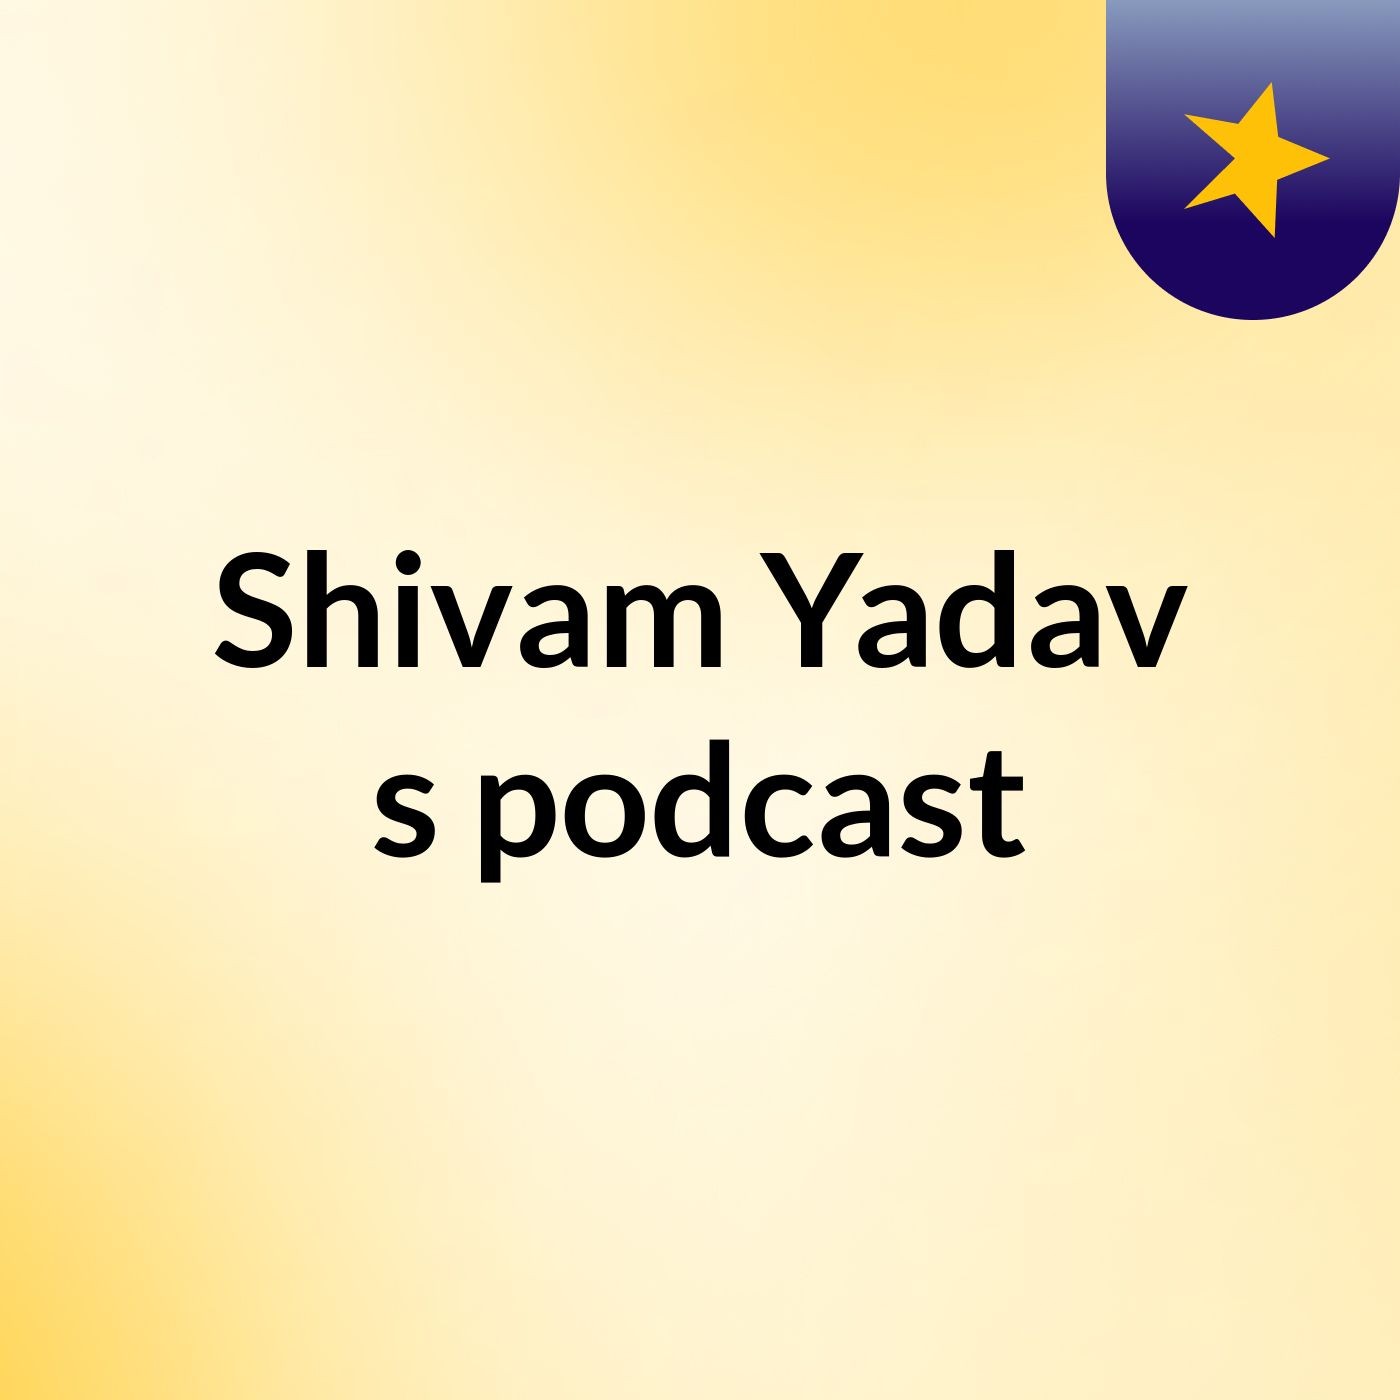 Episode 2 - Shivam Yadav's podcast